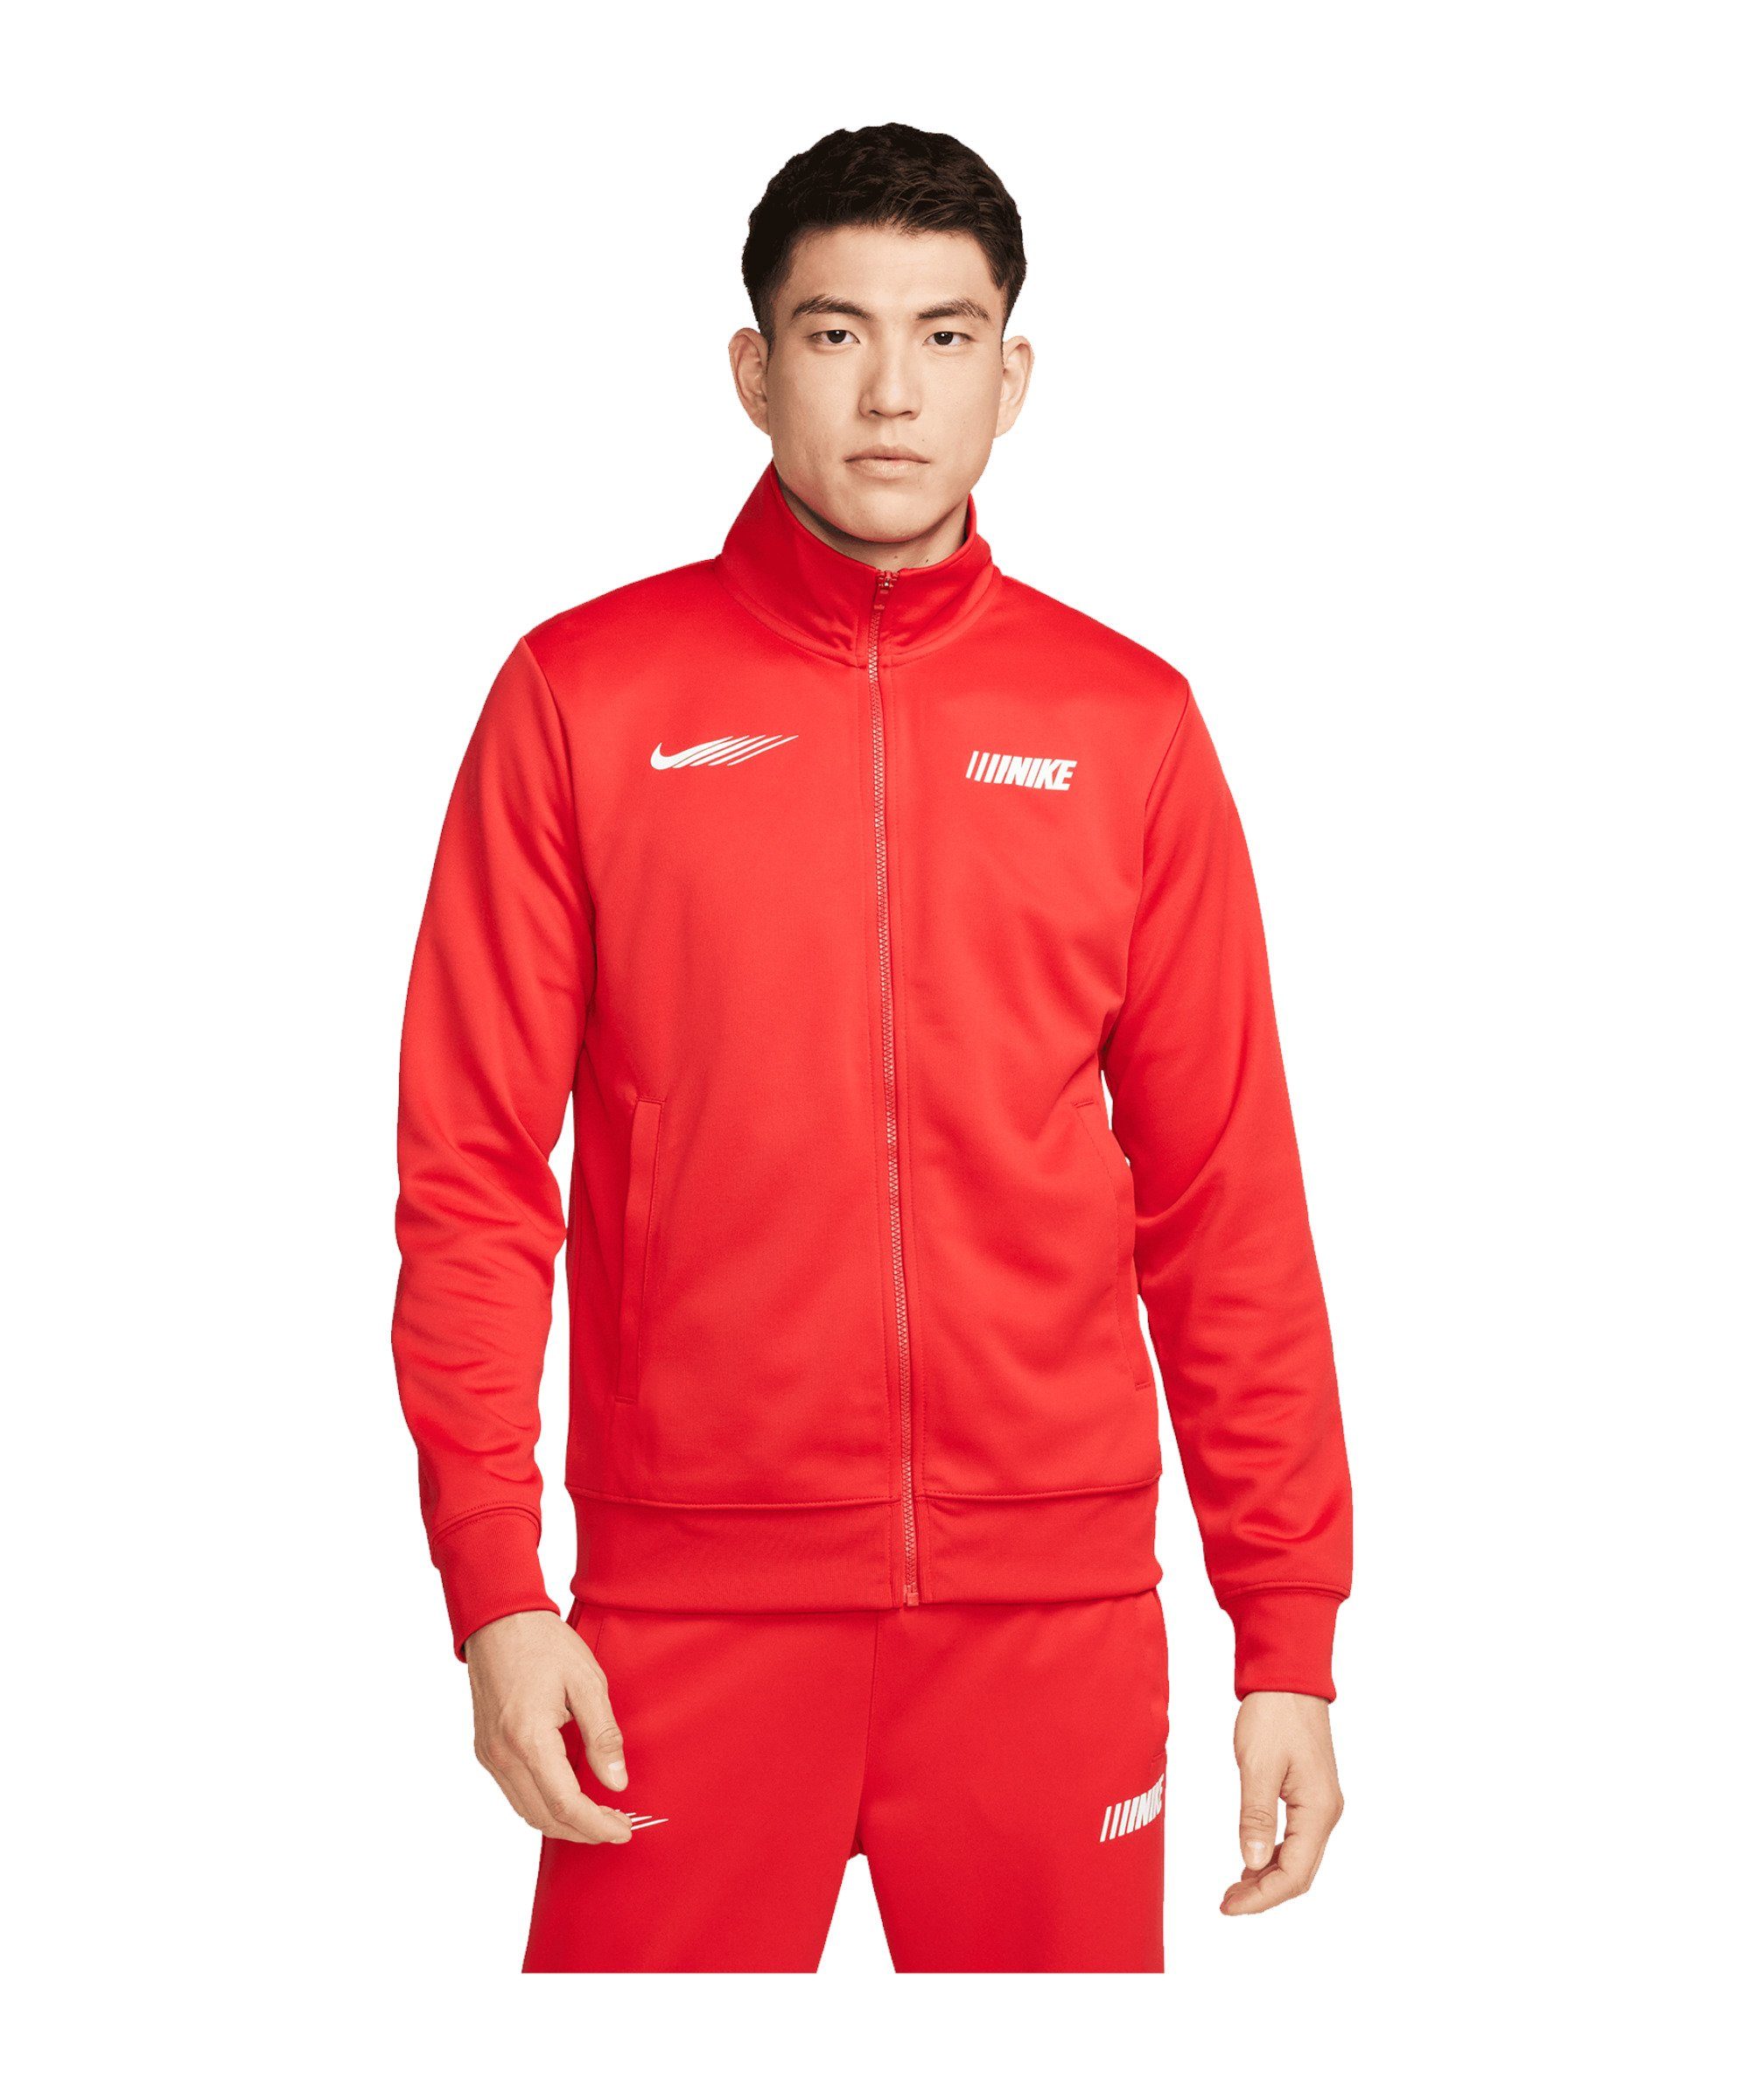 Nike Sportswear Sweatjacke Jacke Issue rot Standart